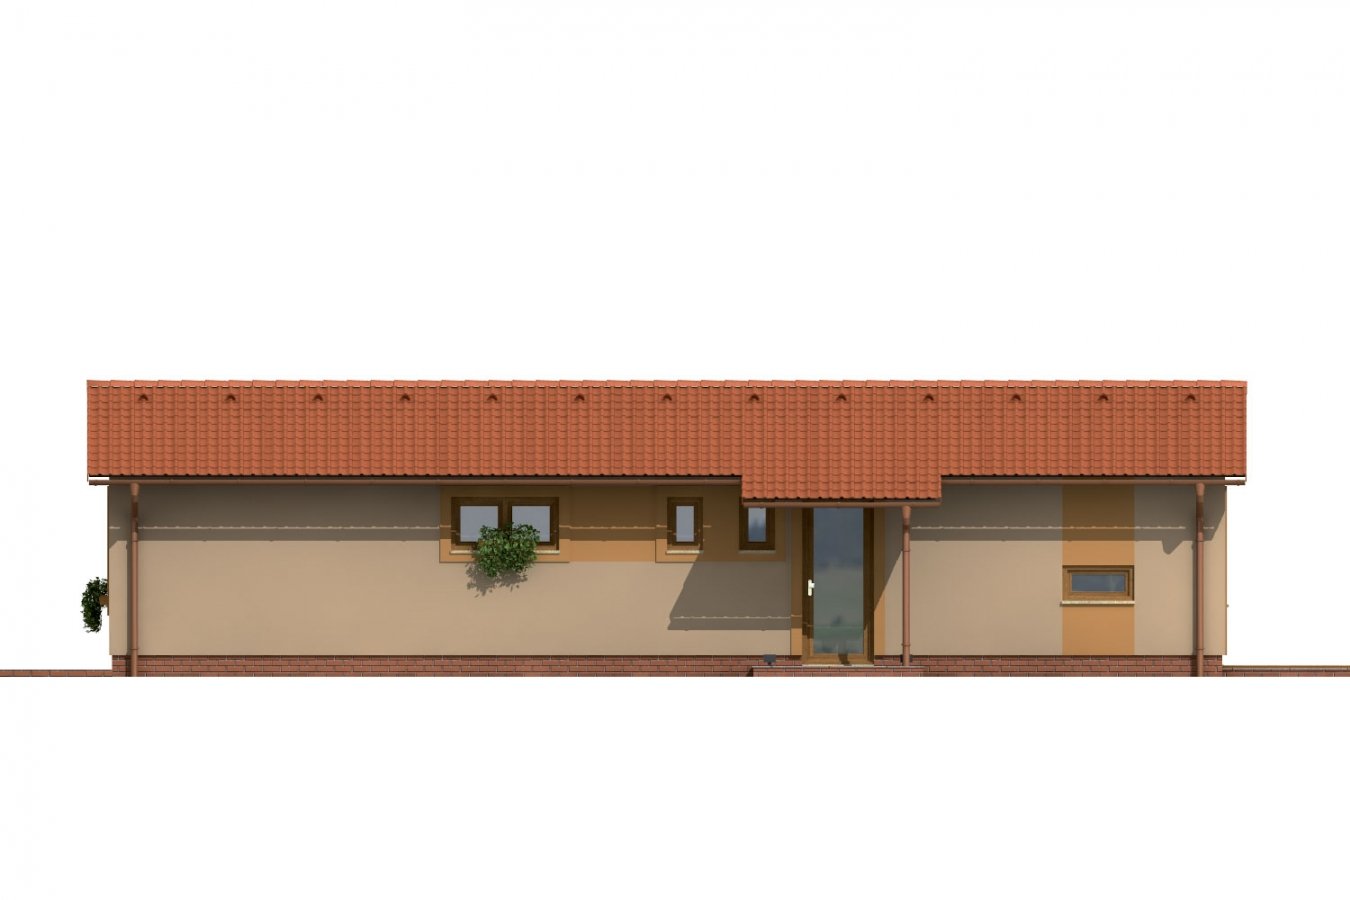 Zrkadlový pohľad 1. - Dům se sedlovou střechou vhodný na úzký pozemek.